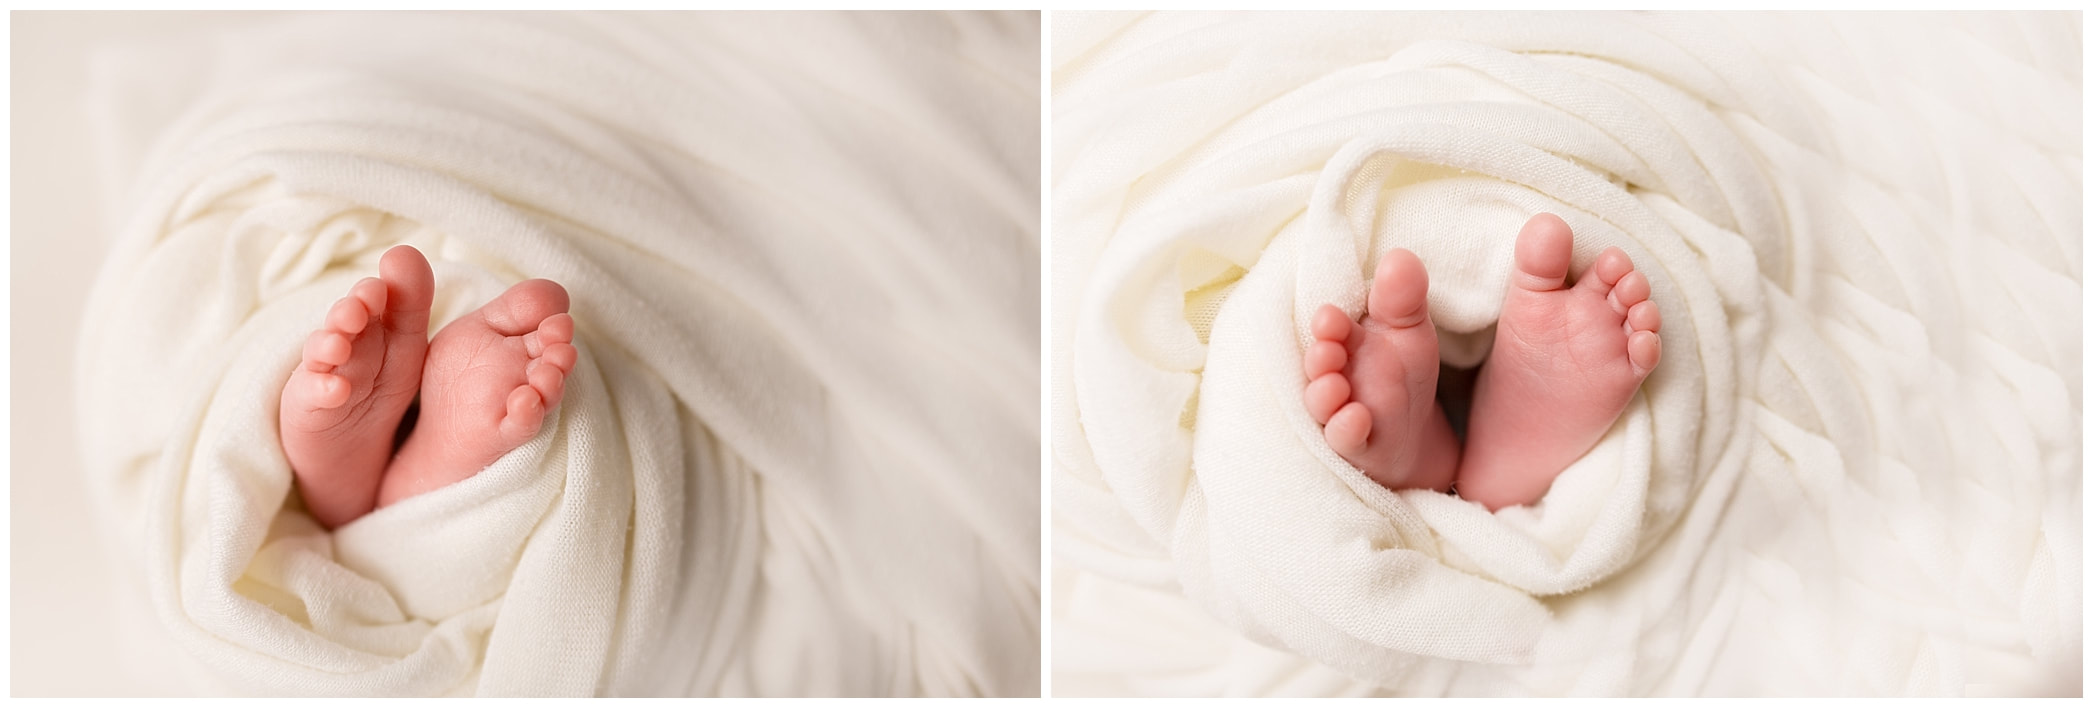 Macro images by Lynne Harper of babies feet